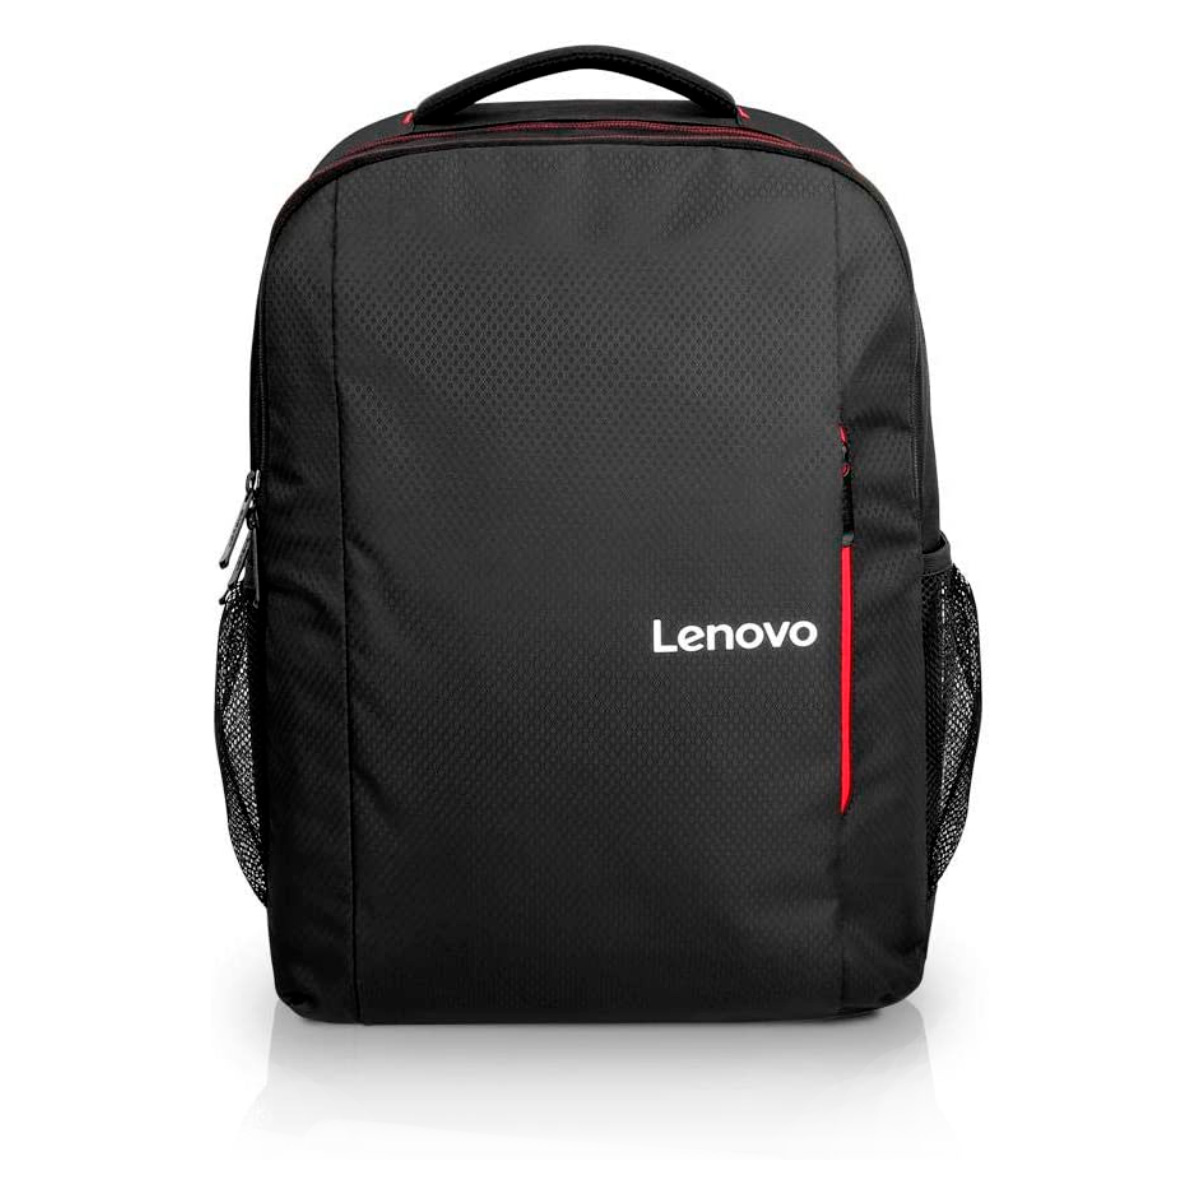 Mochila Lenovo Everyday B510 - para Notebook e Tablet - Preto e Vermelho - GX40Q75214